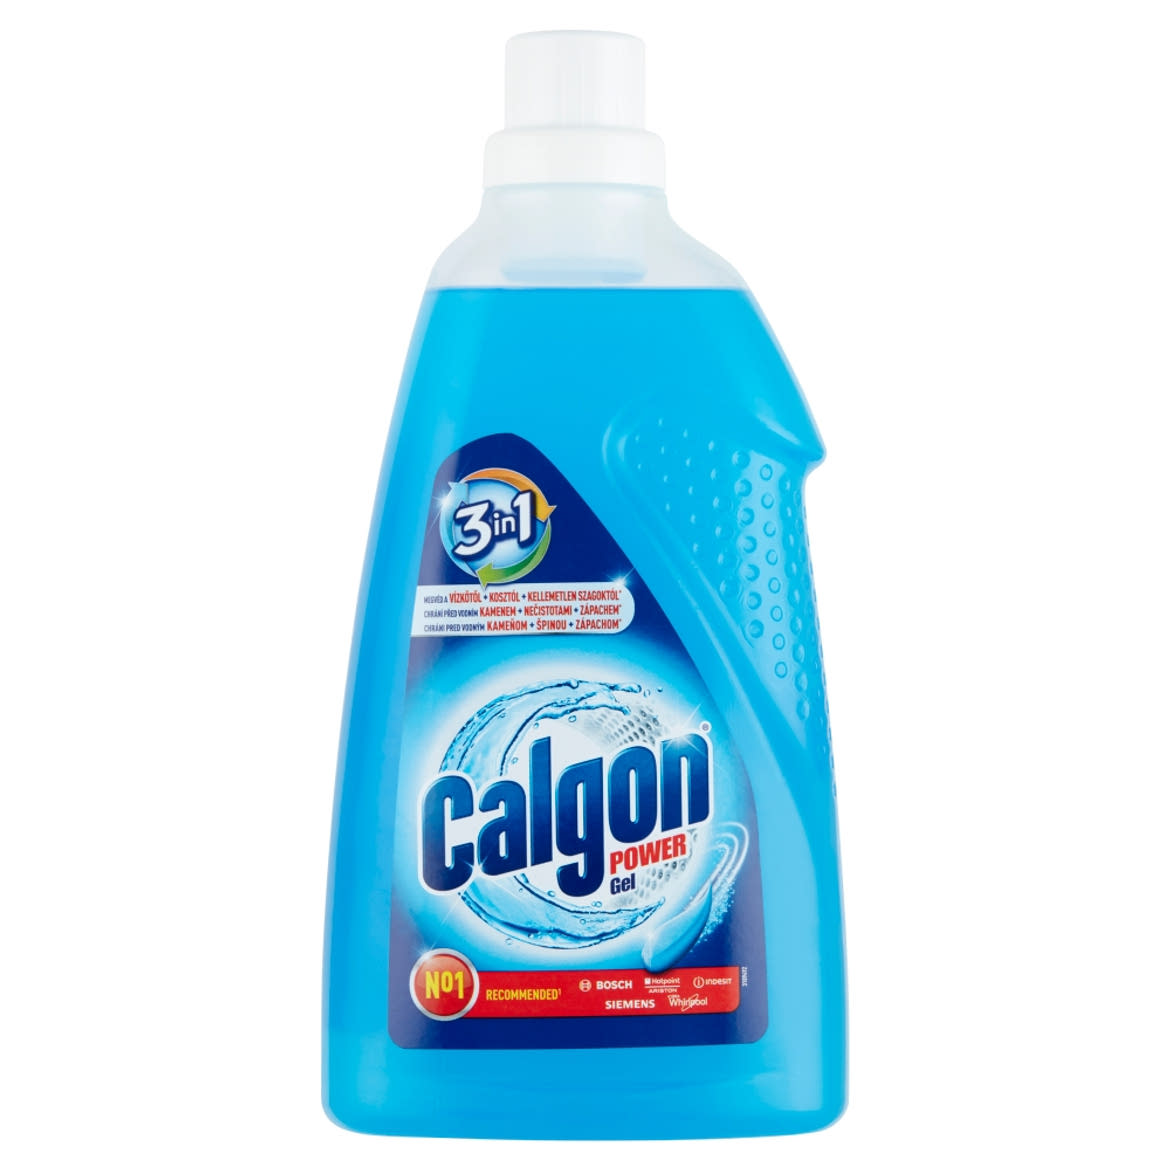 Calgon 3in1 vízlágyító gél